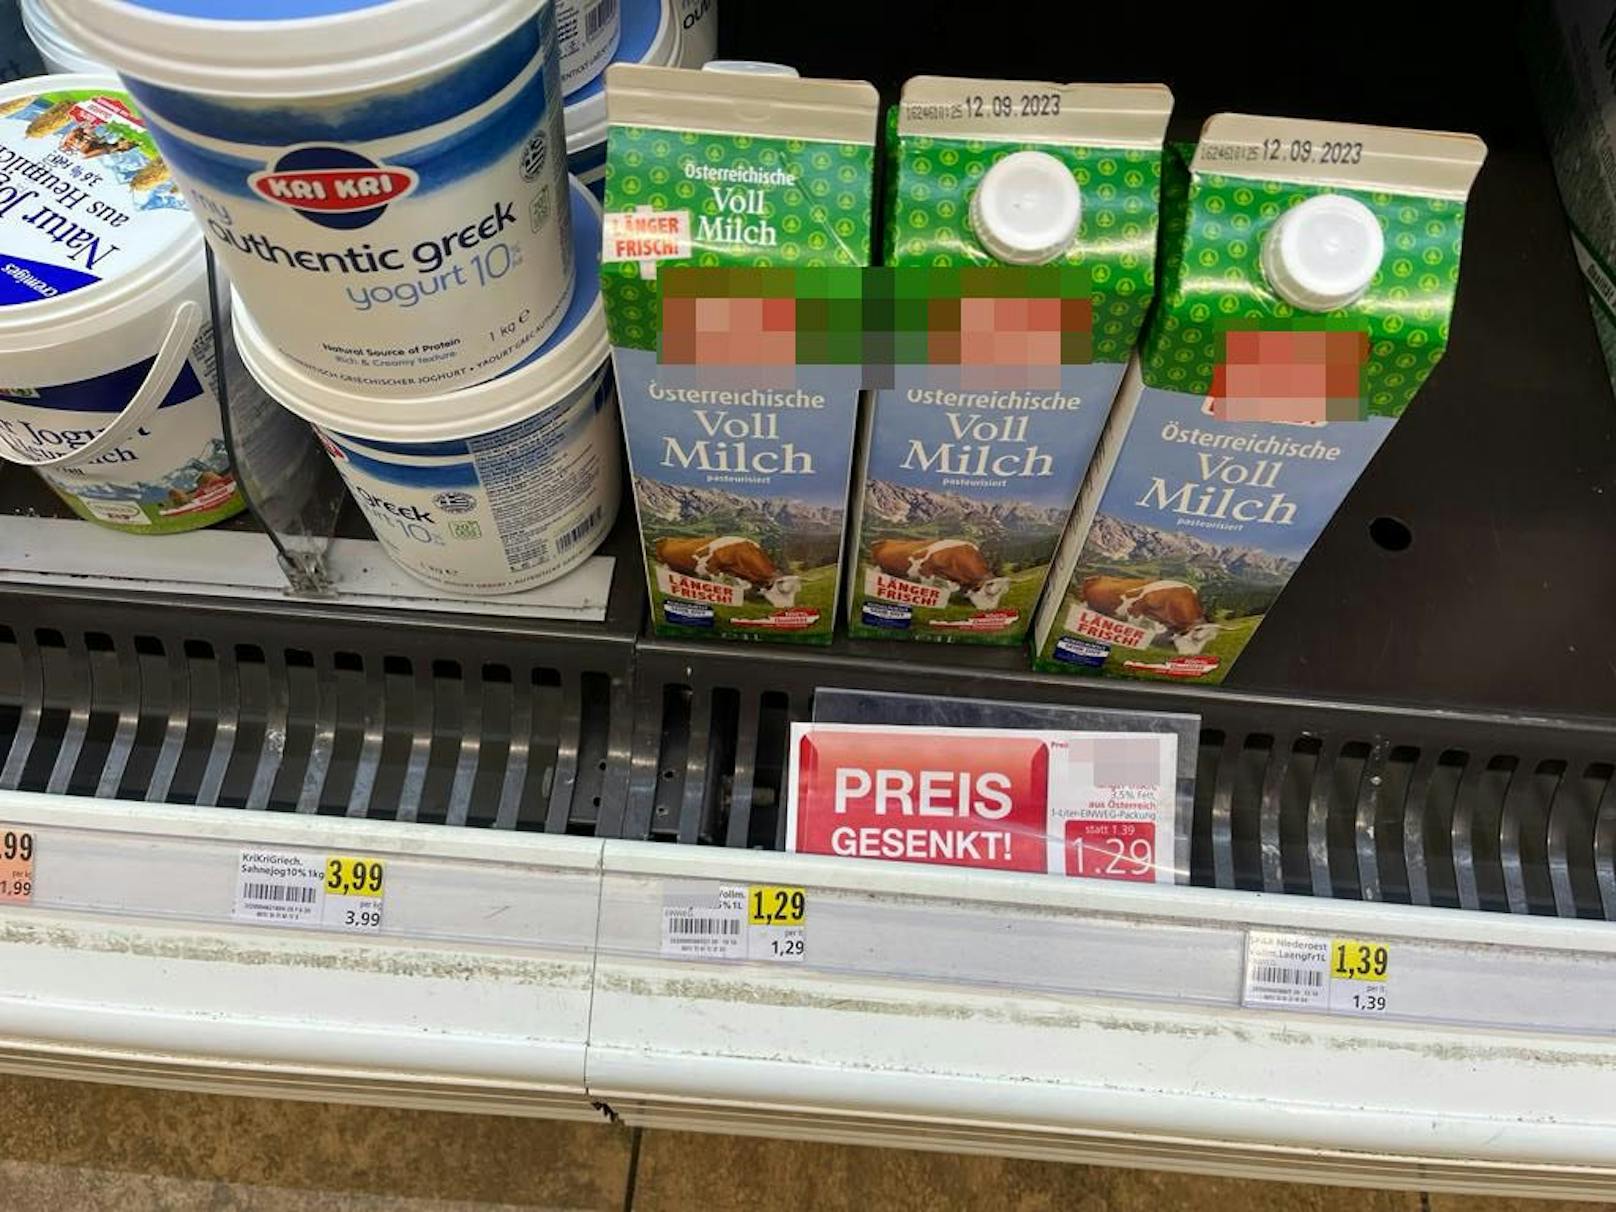 Die Billigmilch ist billiger, der Unterschied ist nicht eklatant.